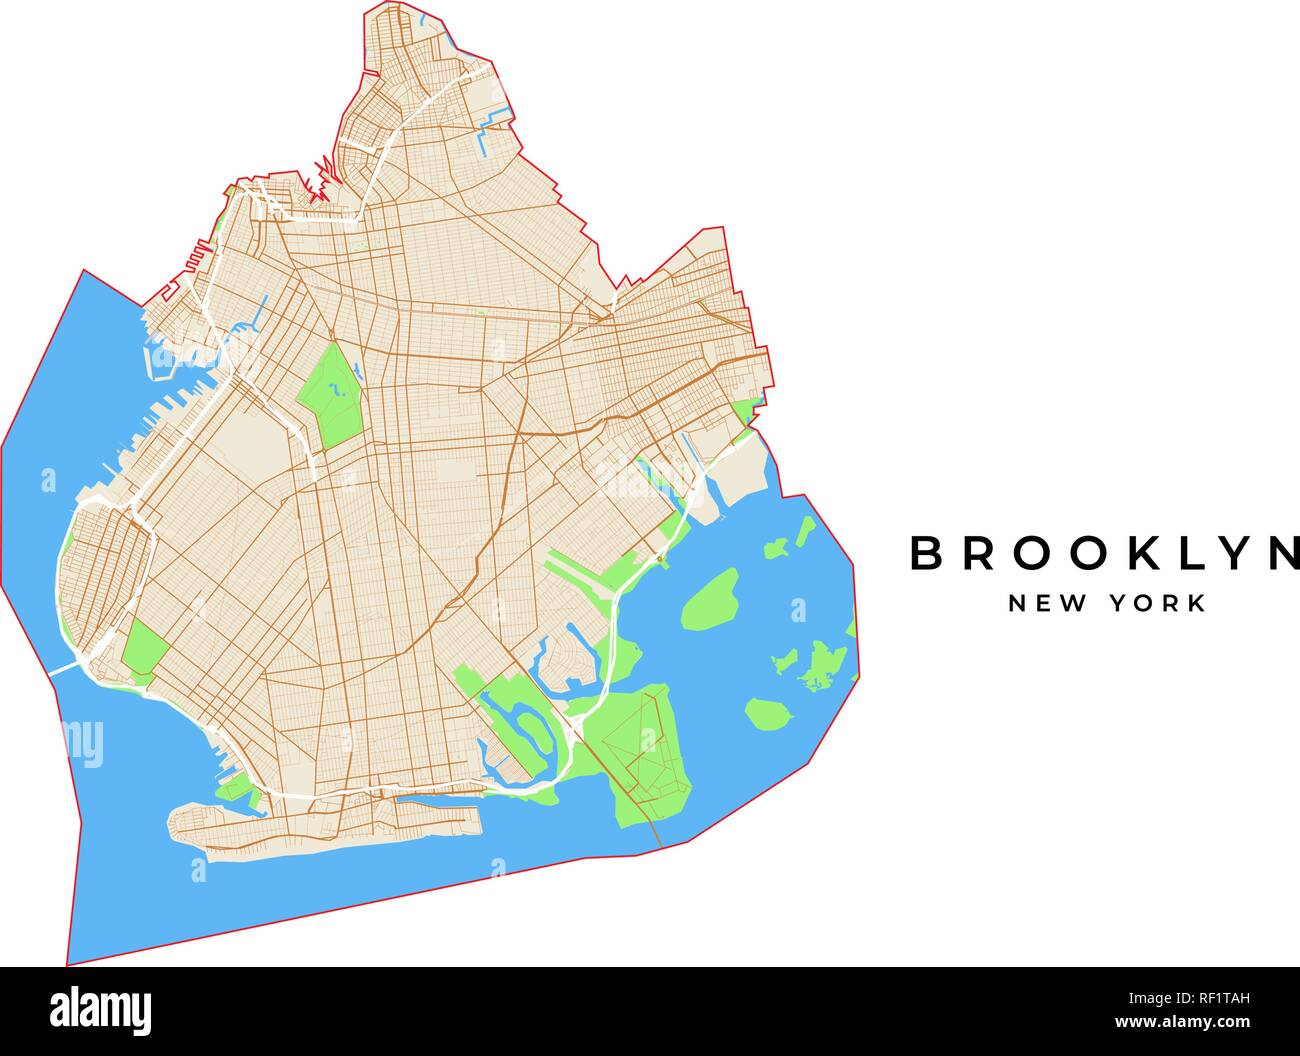 Vektorkarte von Brooklyn, New York, USA. Verschiedene Farben für Straßen, Parks, Wasser und Grenze. Stock Vektor